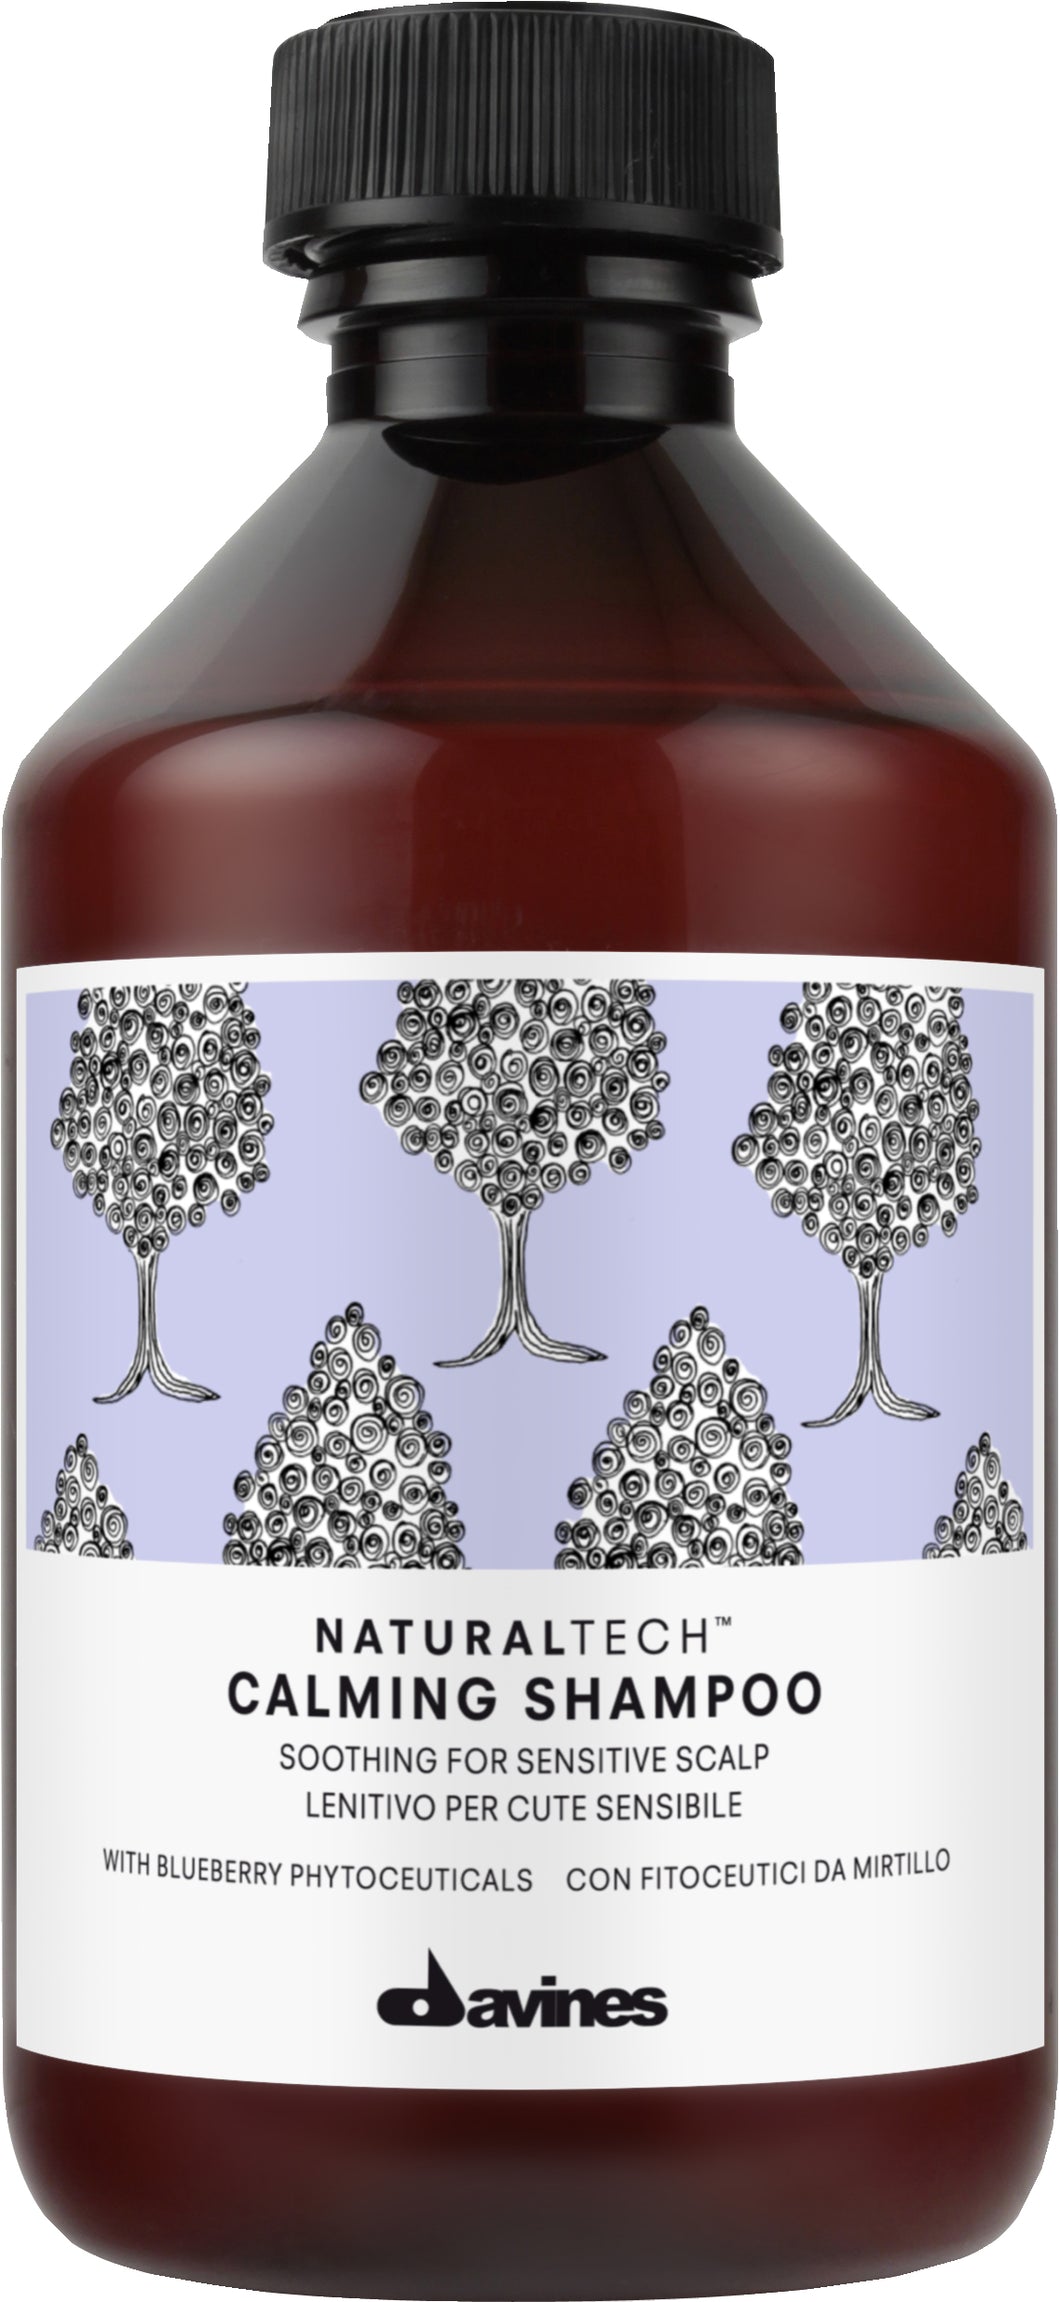 Naturaltech Calming Shampoo